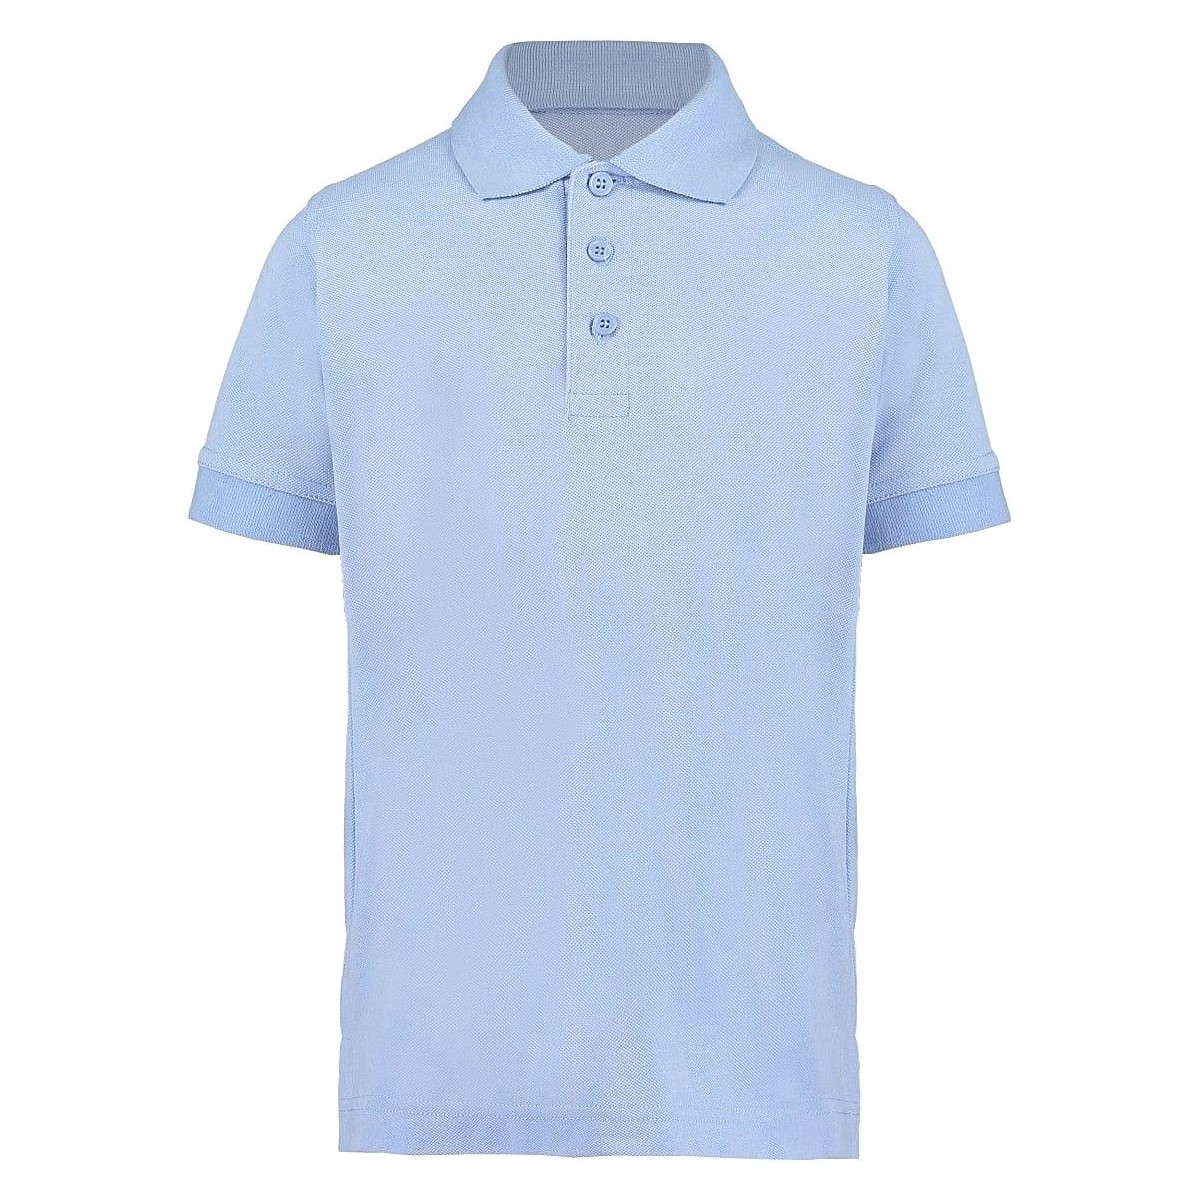 textil Niños Tops y Camisetas Kustom Kit KK406 Azul